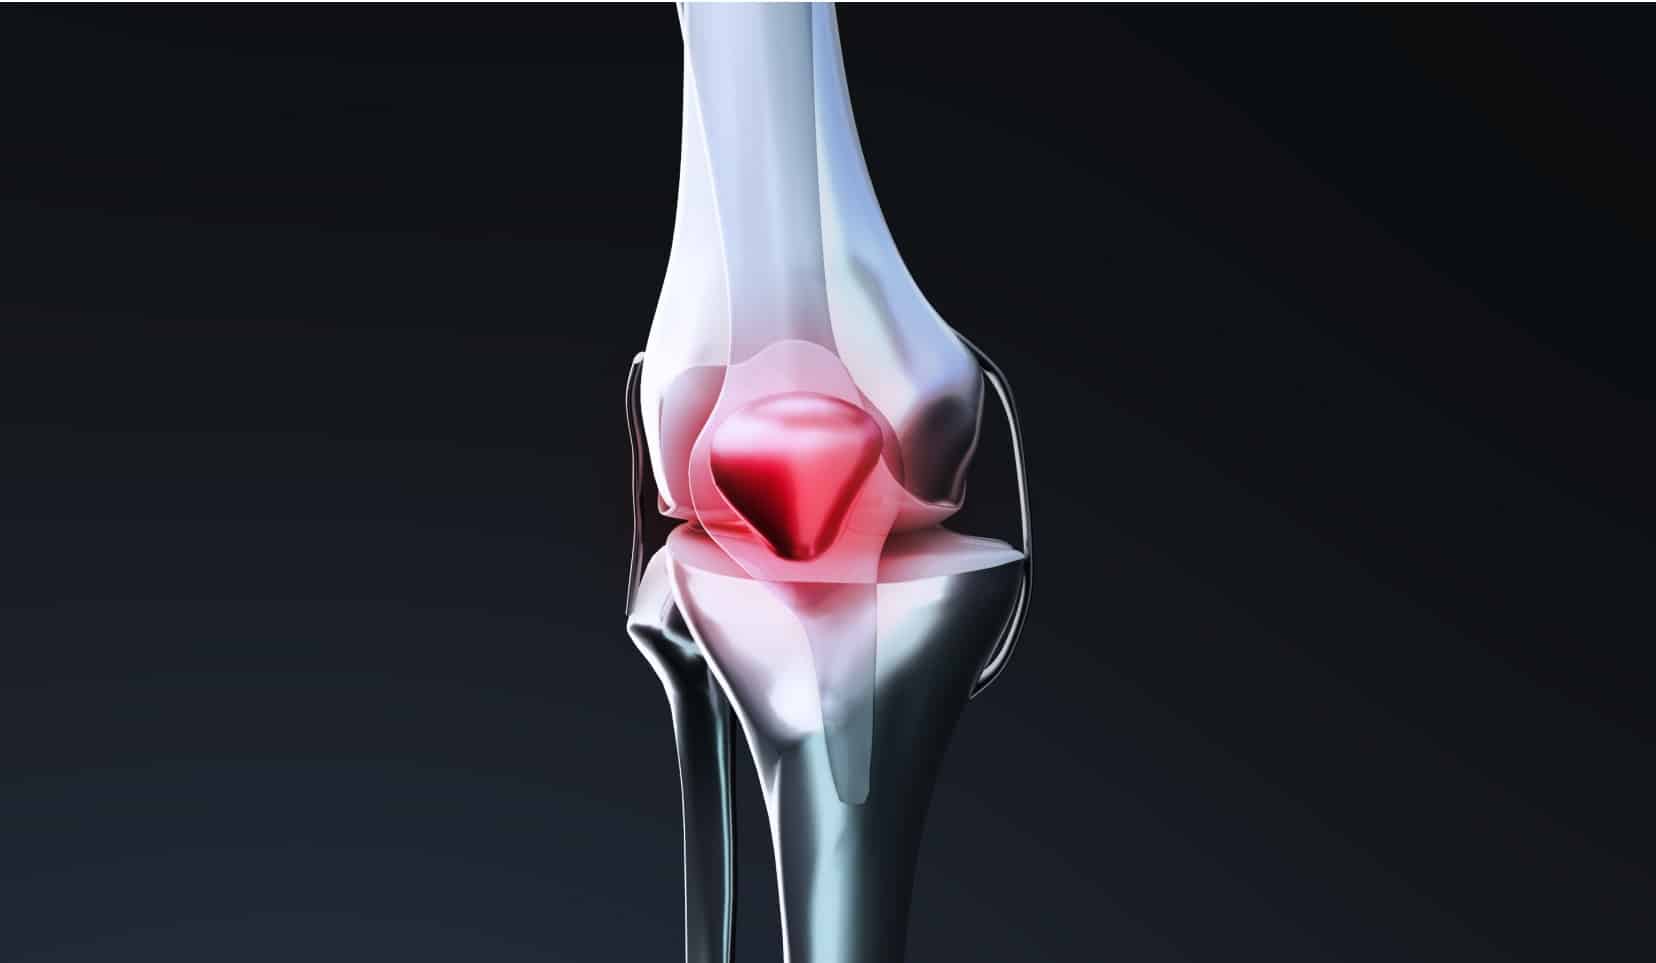 Traitement de la luxation du genou | luxation rotule traitement | Bois-Guillaume | Dr Polle